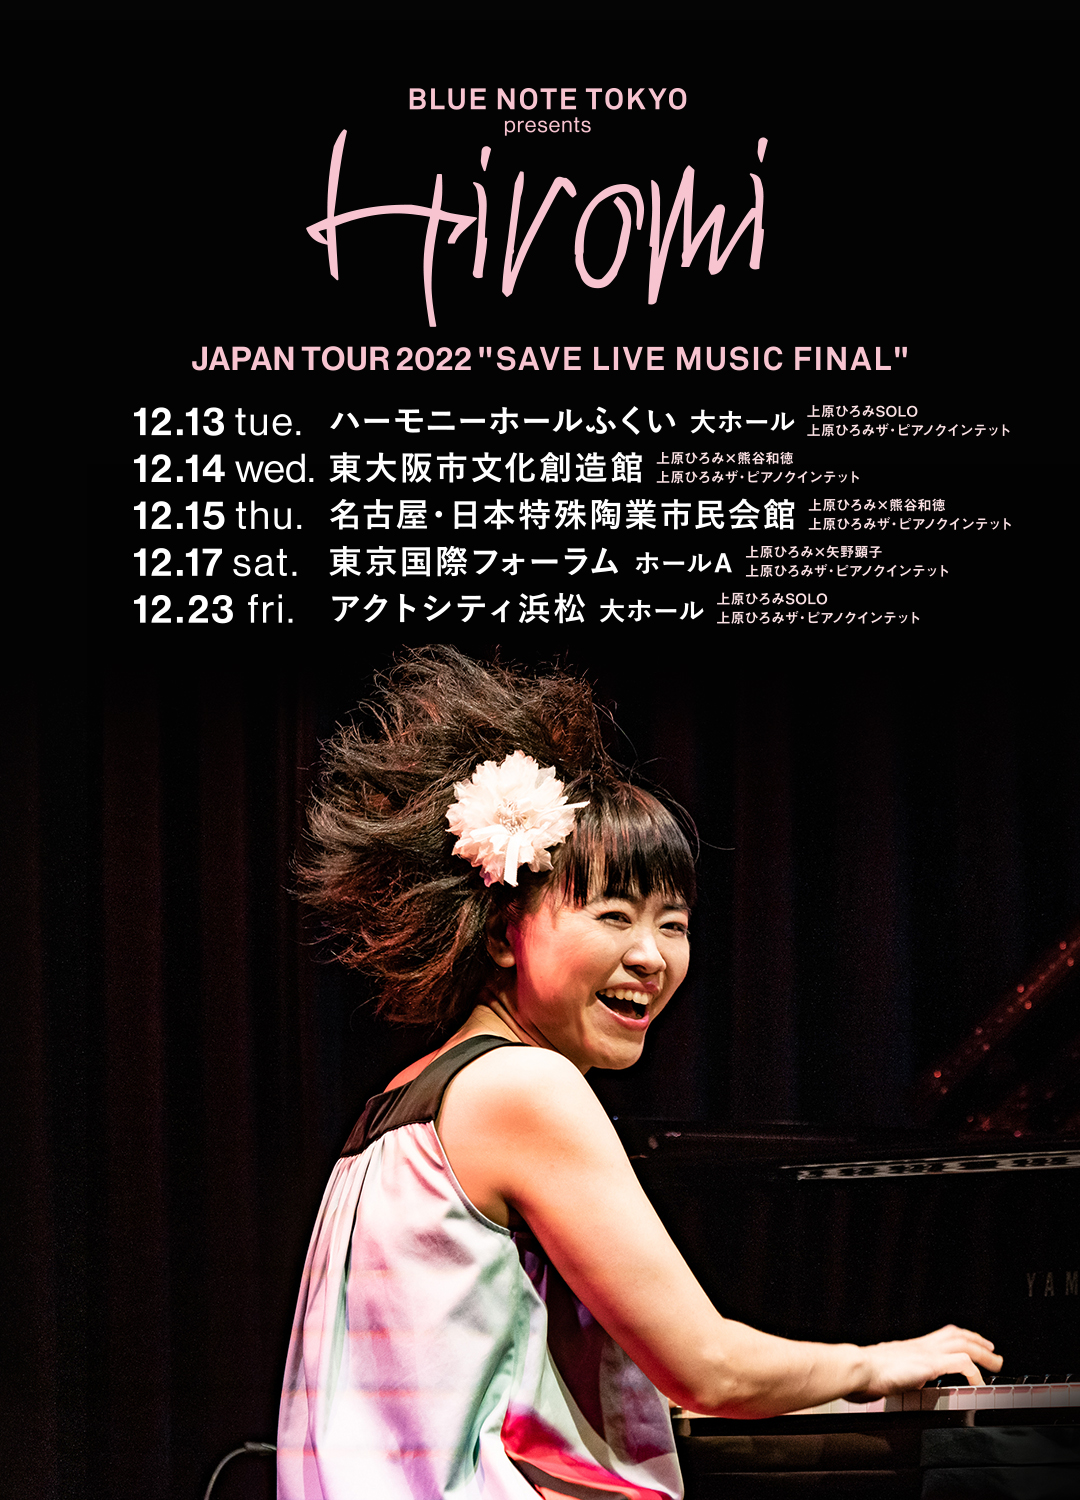 Hiromi Japan Tour 2022 “SAVE LIVE MUSIC FINAL”